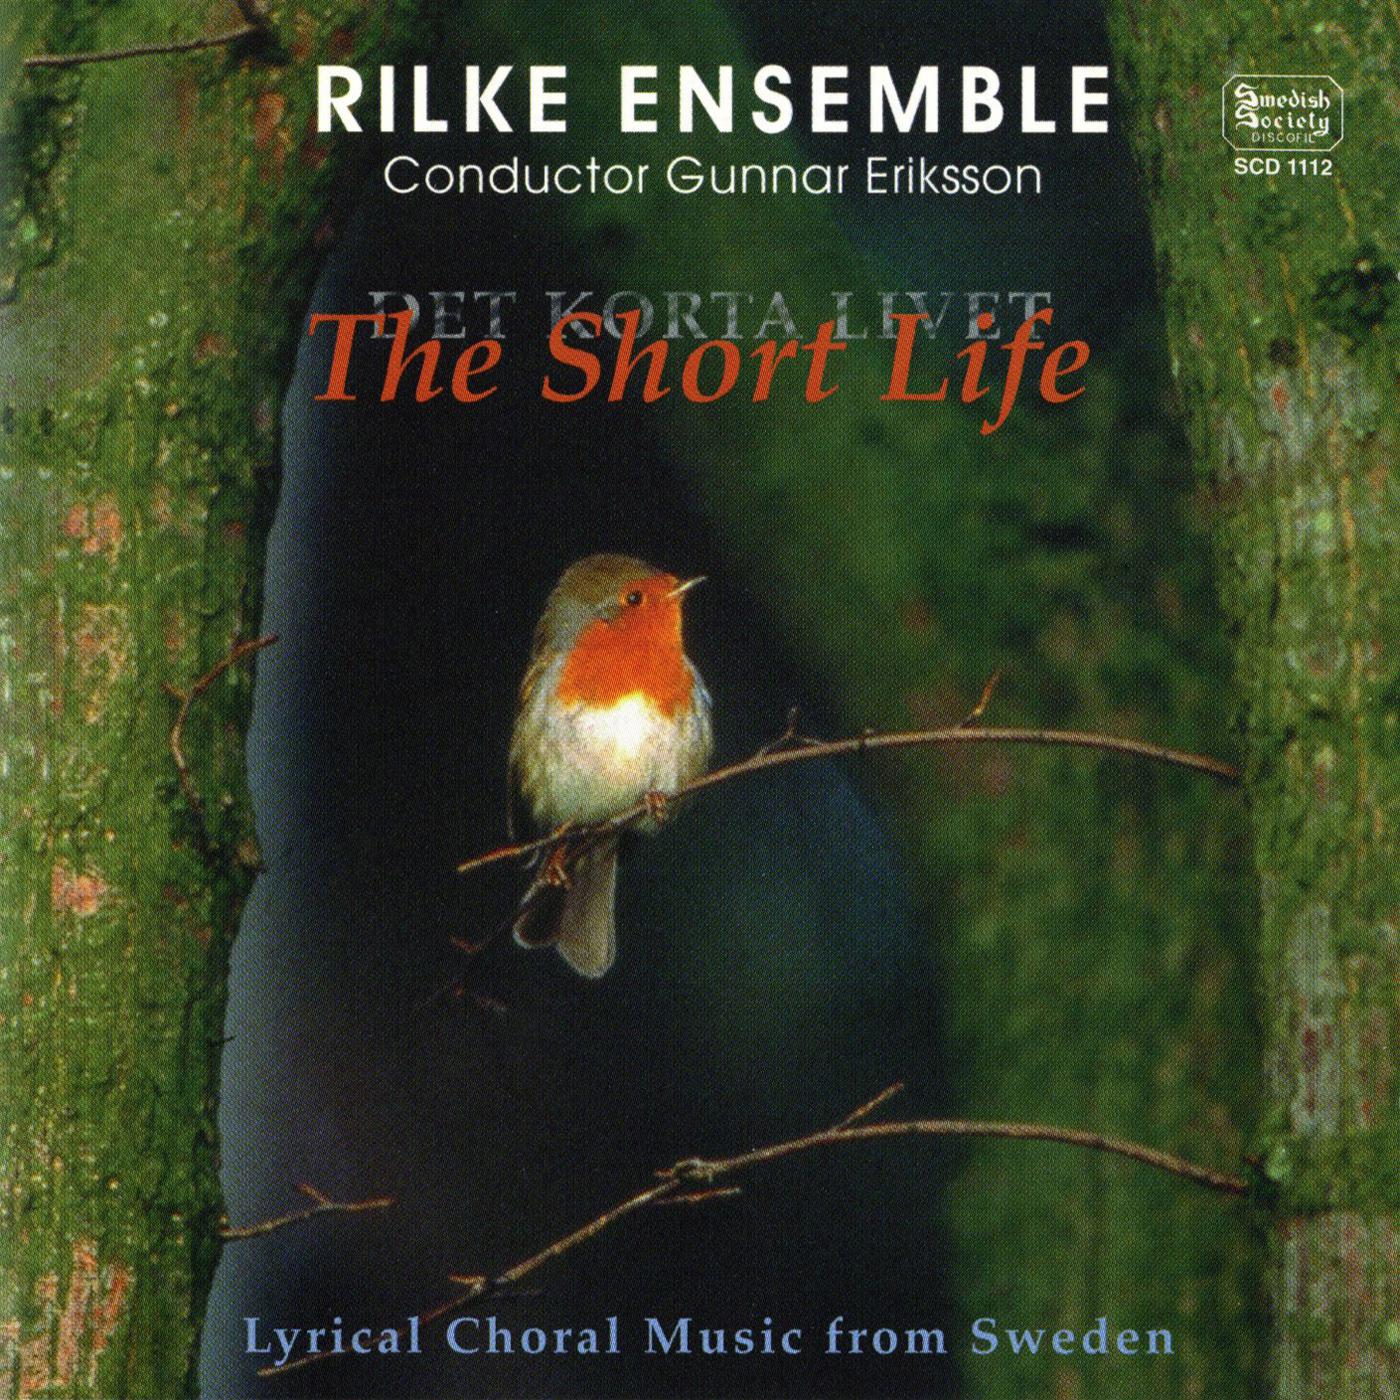 Rilke Ensemble - Forvarskvall (Spring evening)